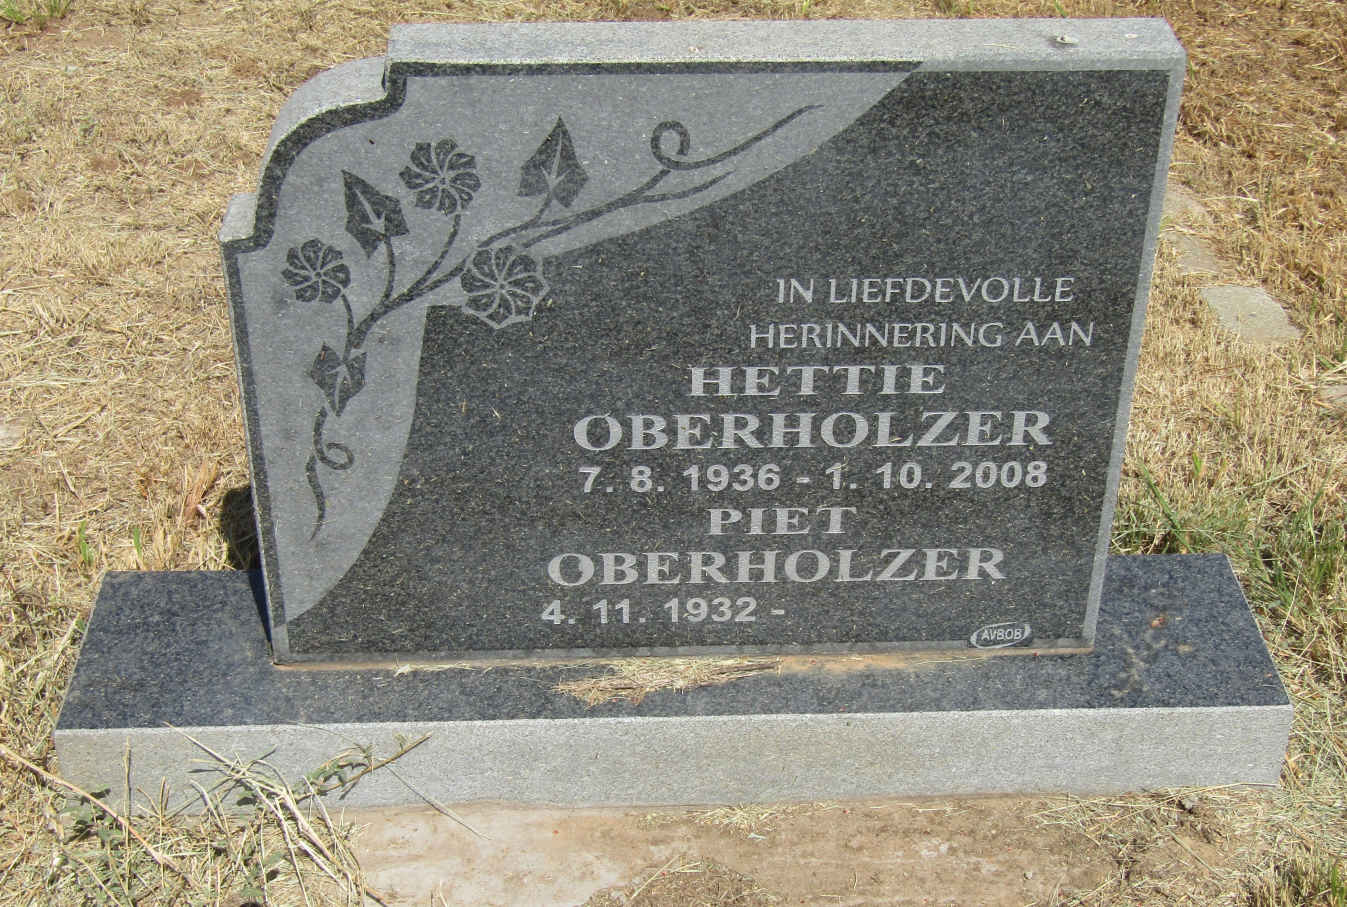 OBERHOLZER Piet 1932- & Hettie 1936-2008